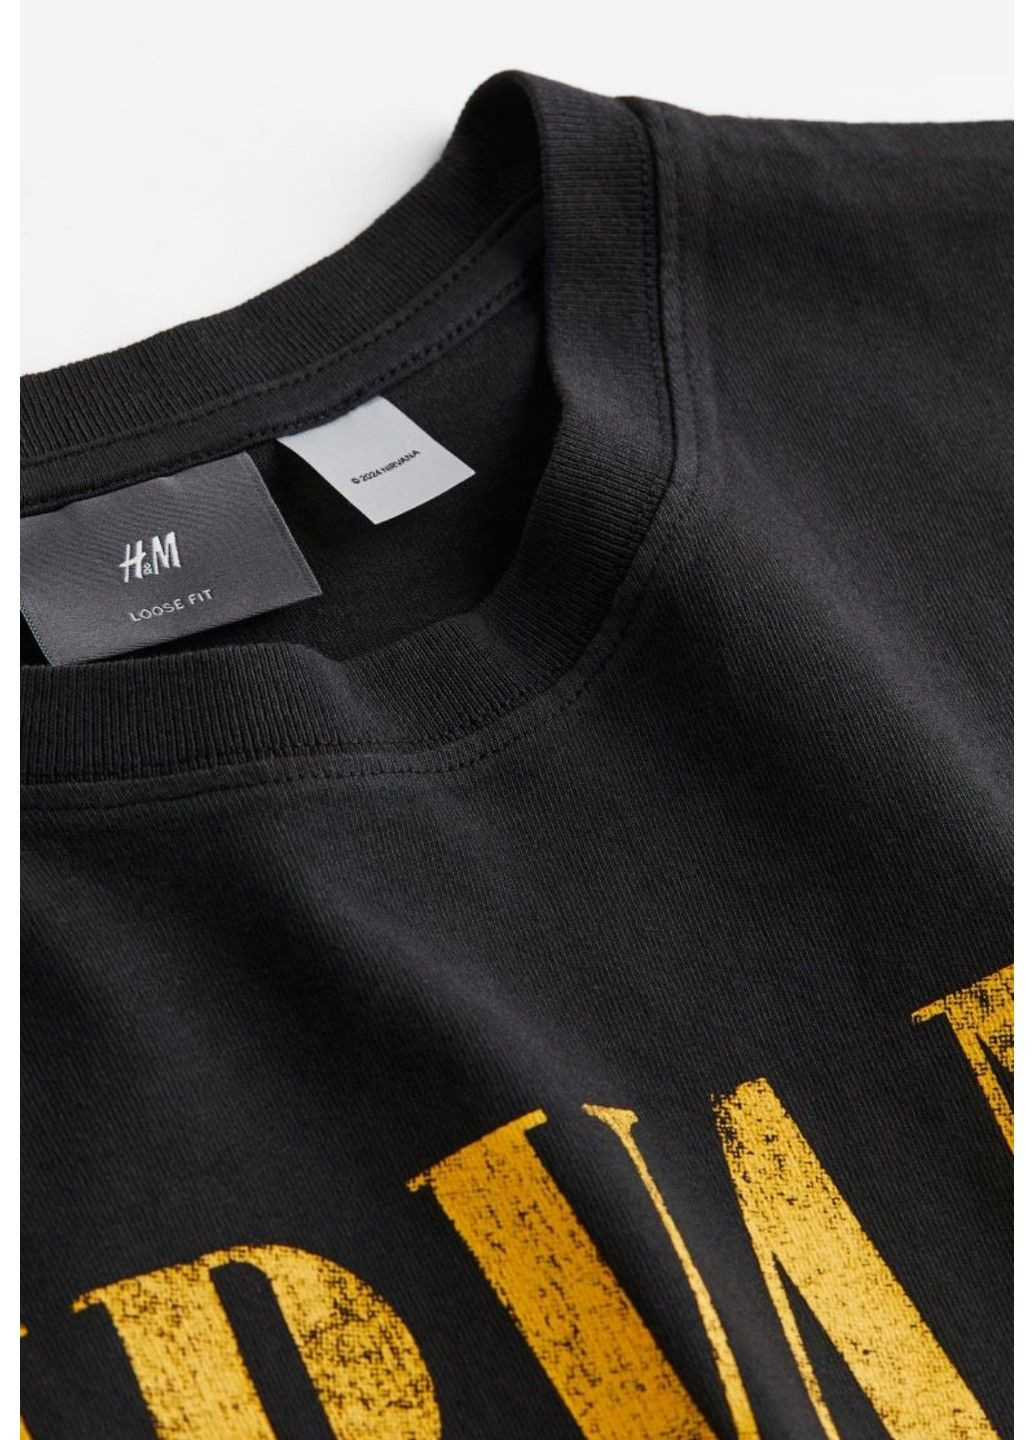 Черная мужская футболка с принтом свободного кроя н&м (56925) s черная H&M